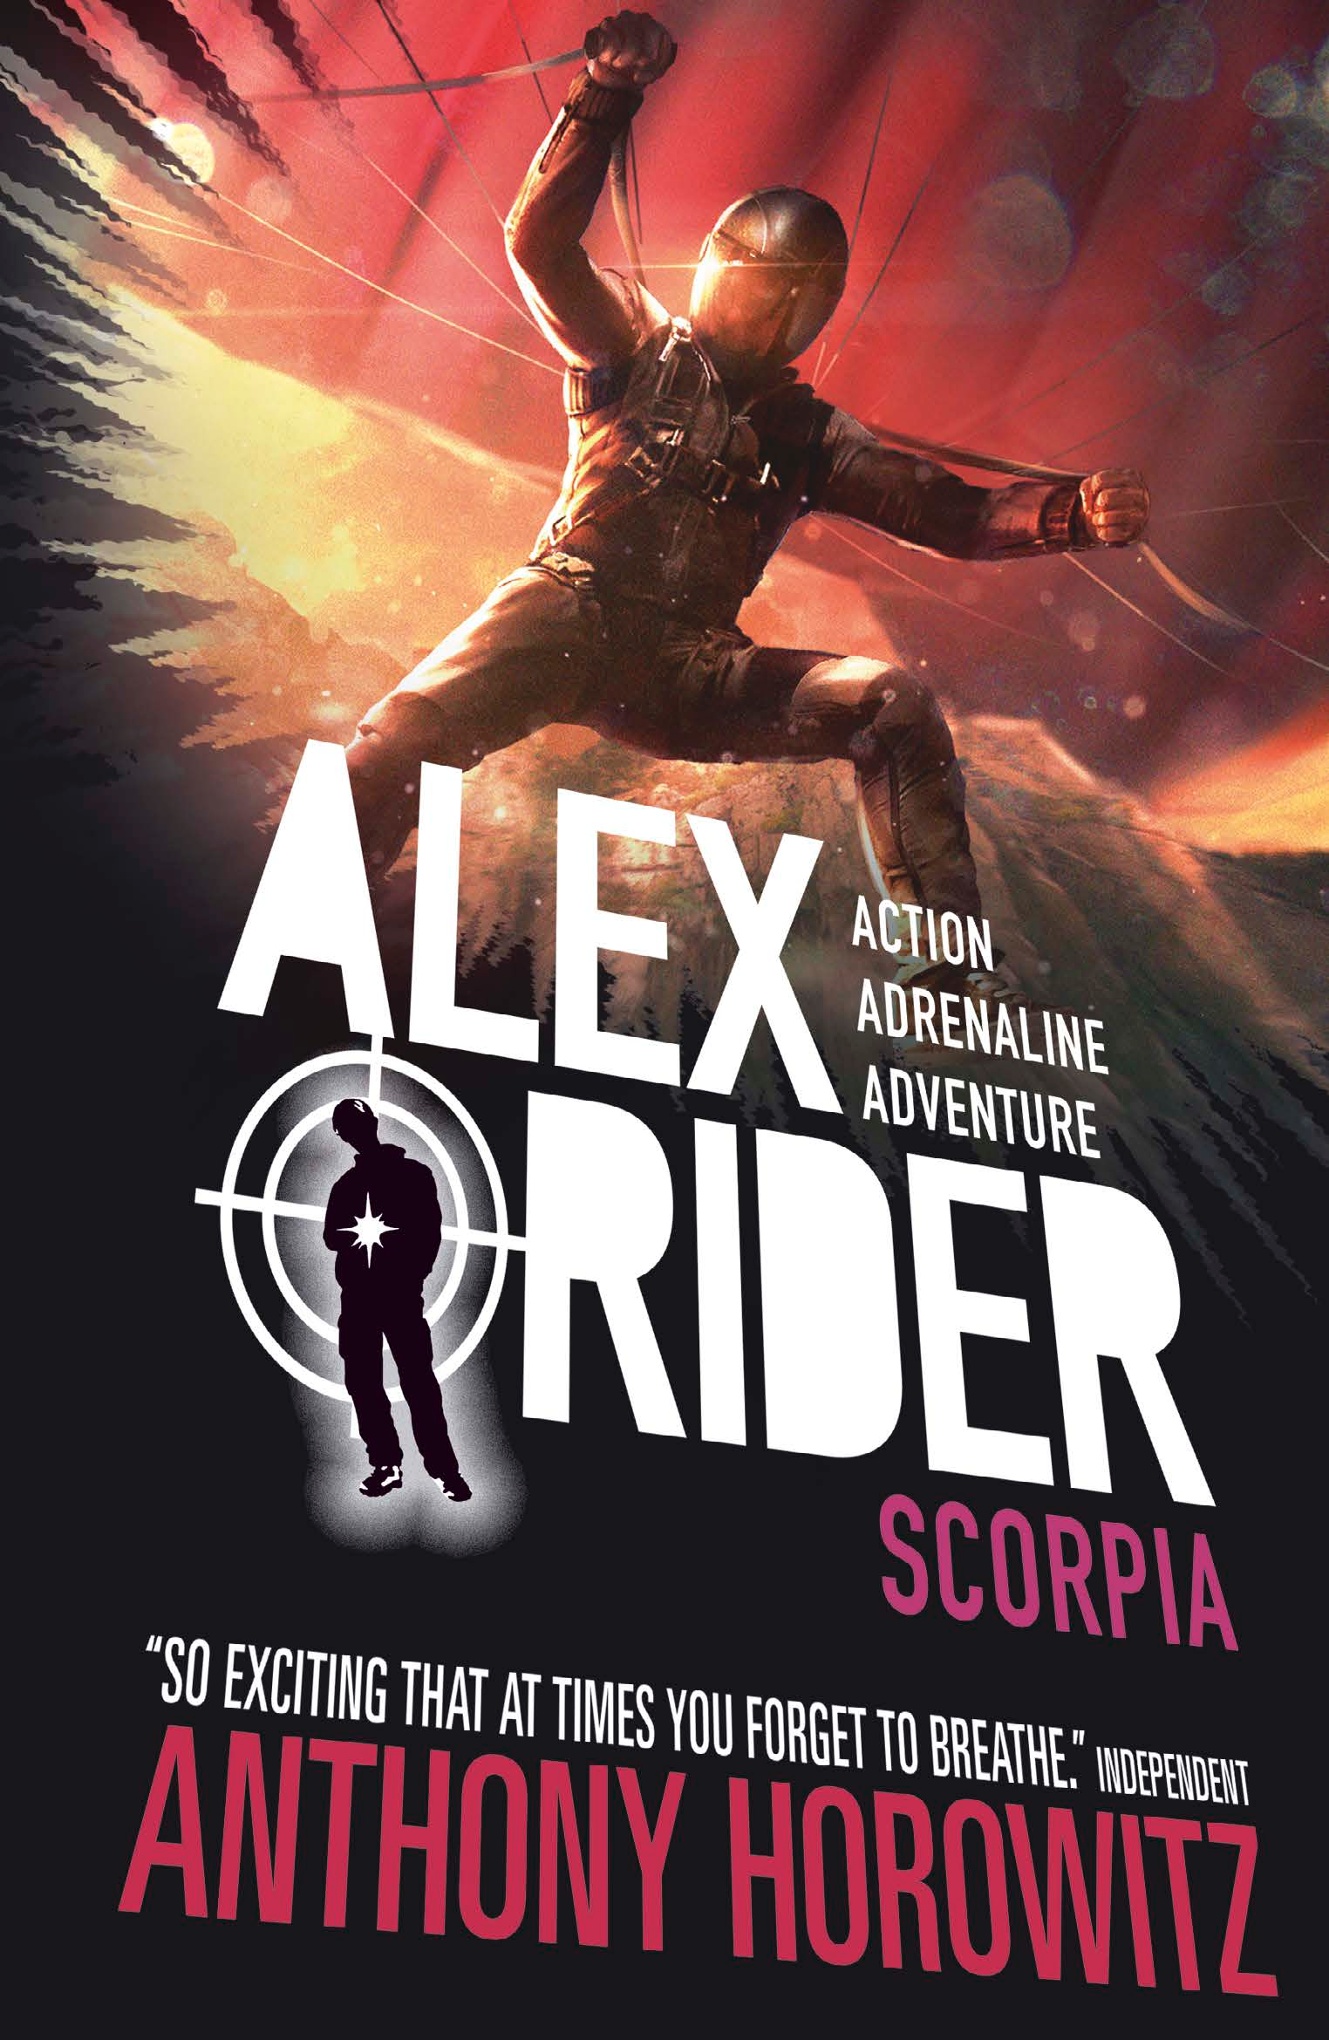 books like alex rider